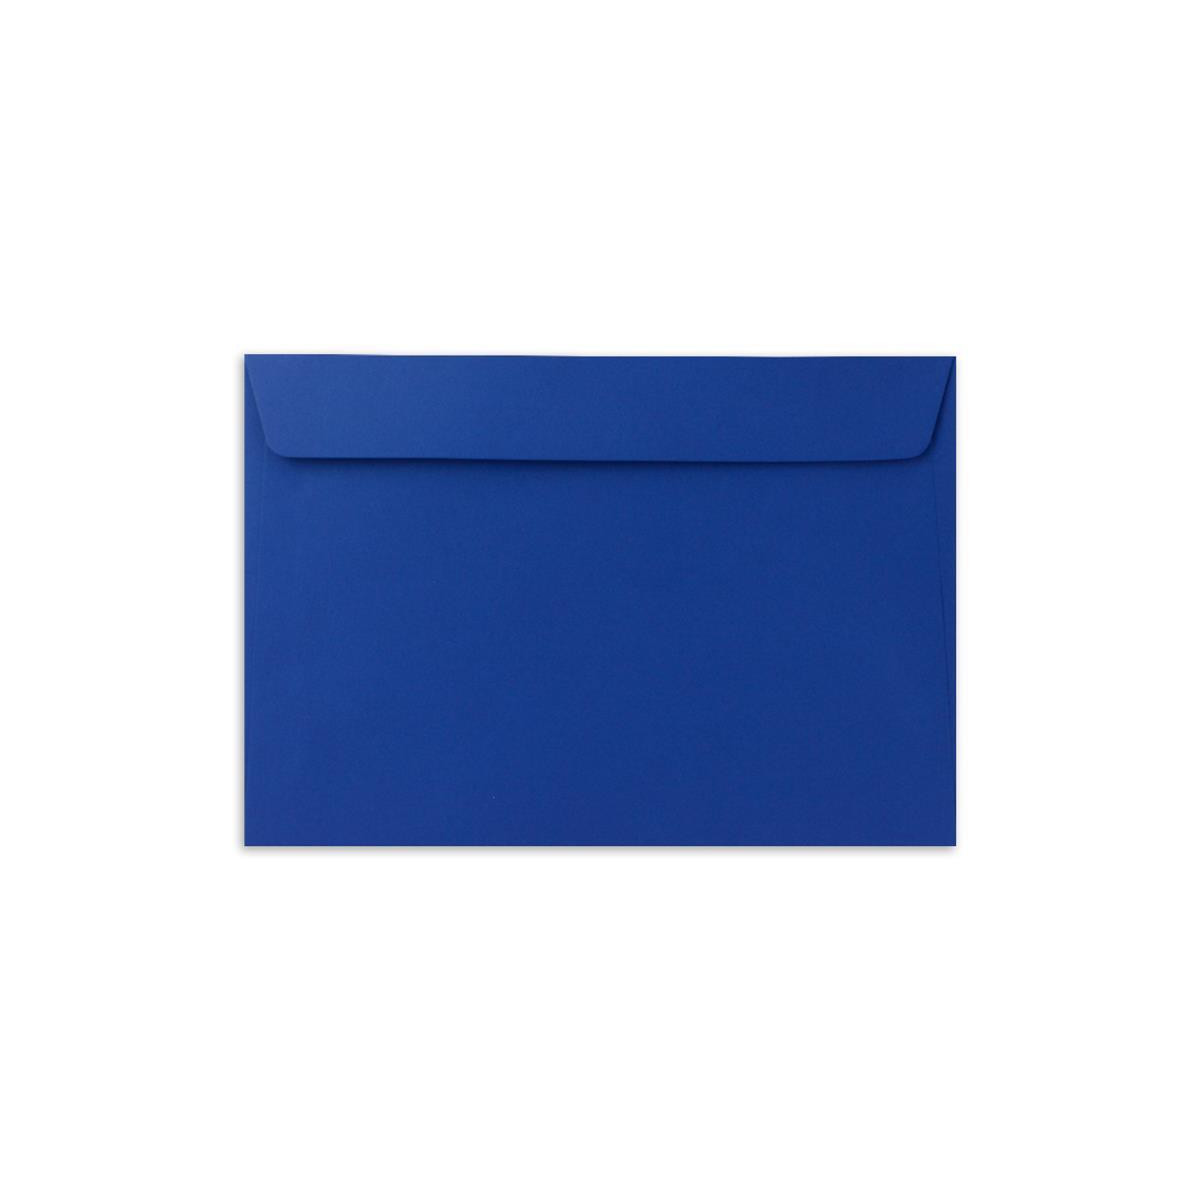 80 g/m² Kuverts in DIN B6 Format 125 x 175 mm Nassklebung ohne Fenster 50x Brief-Umschläge in Nacht-Blau/Dunkelblau Qualitätsmarke FarbenFroh®